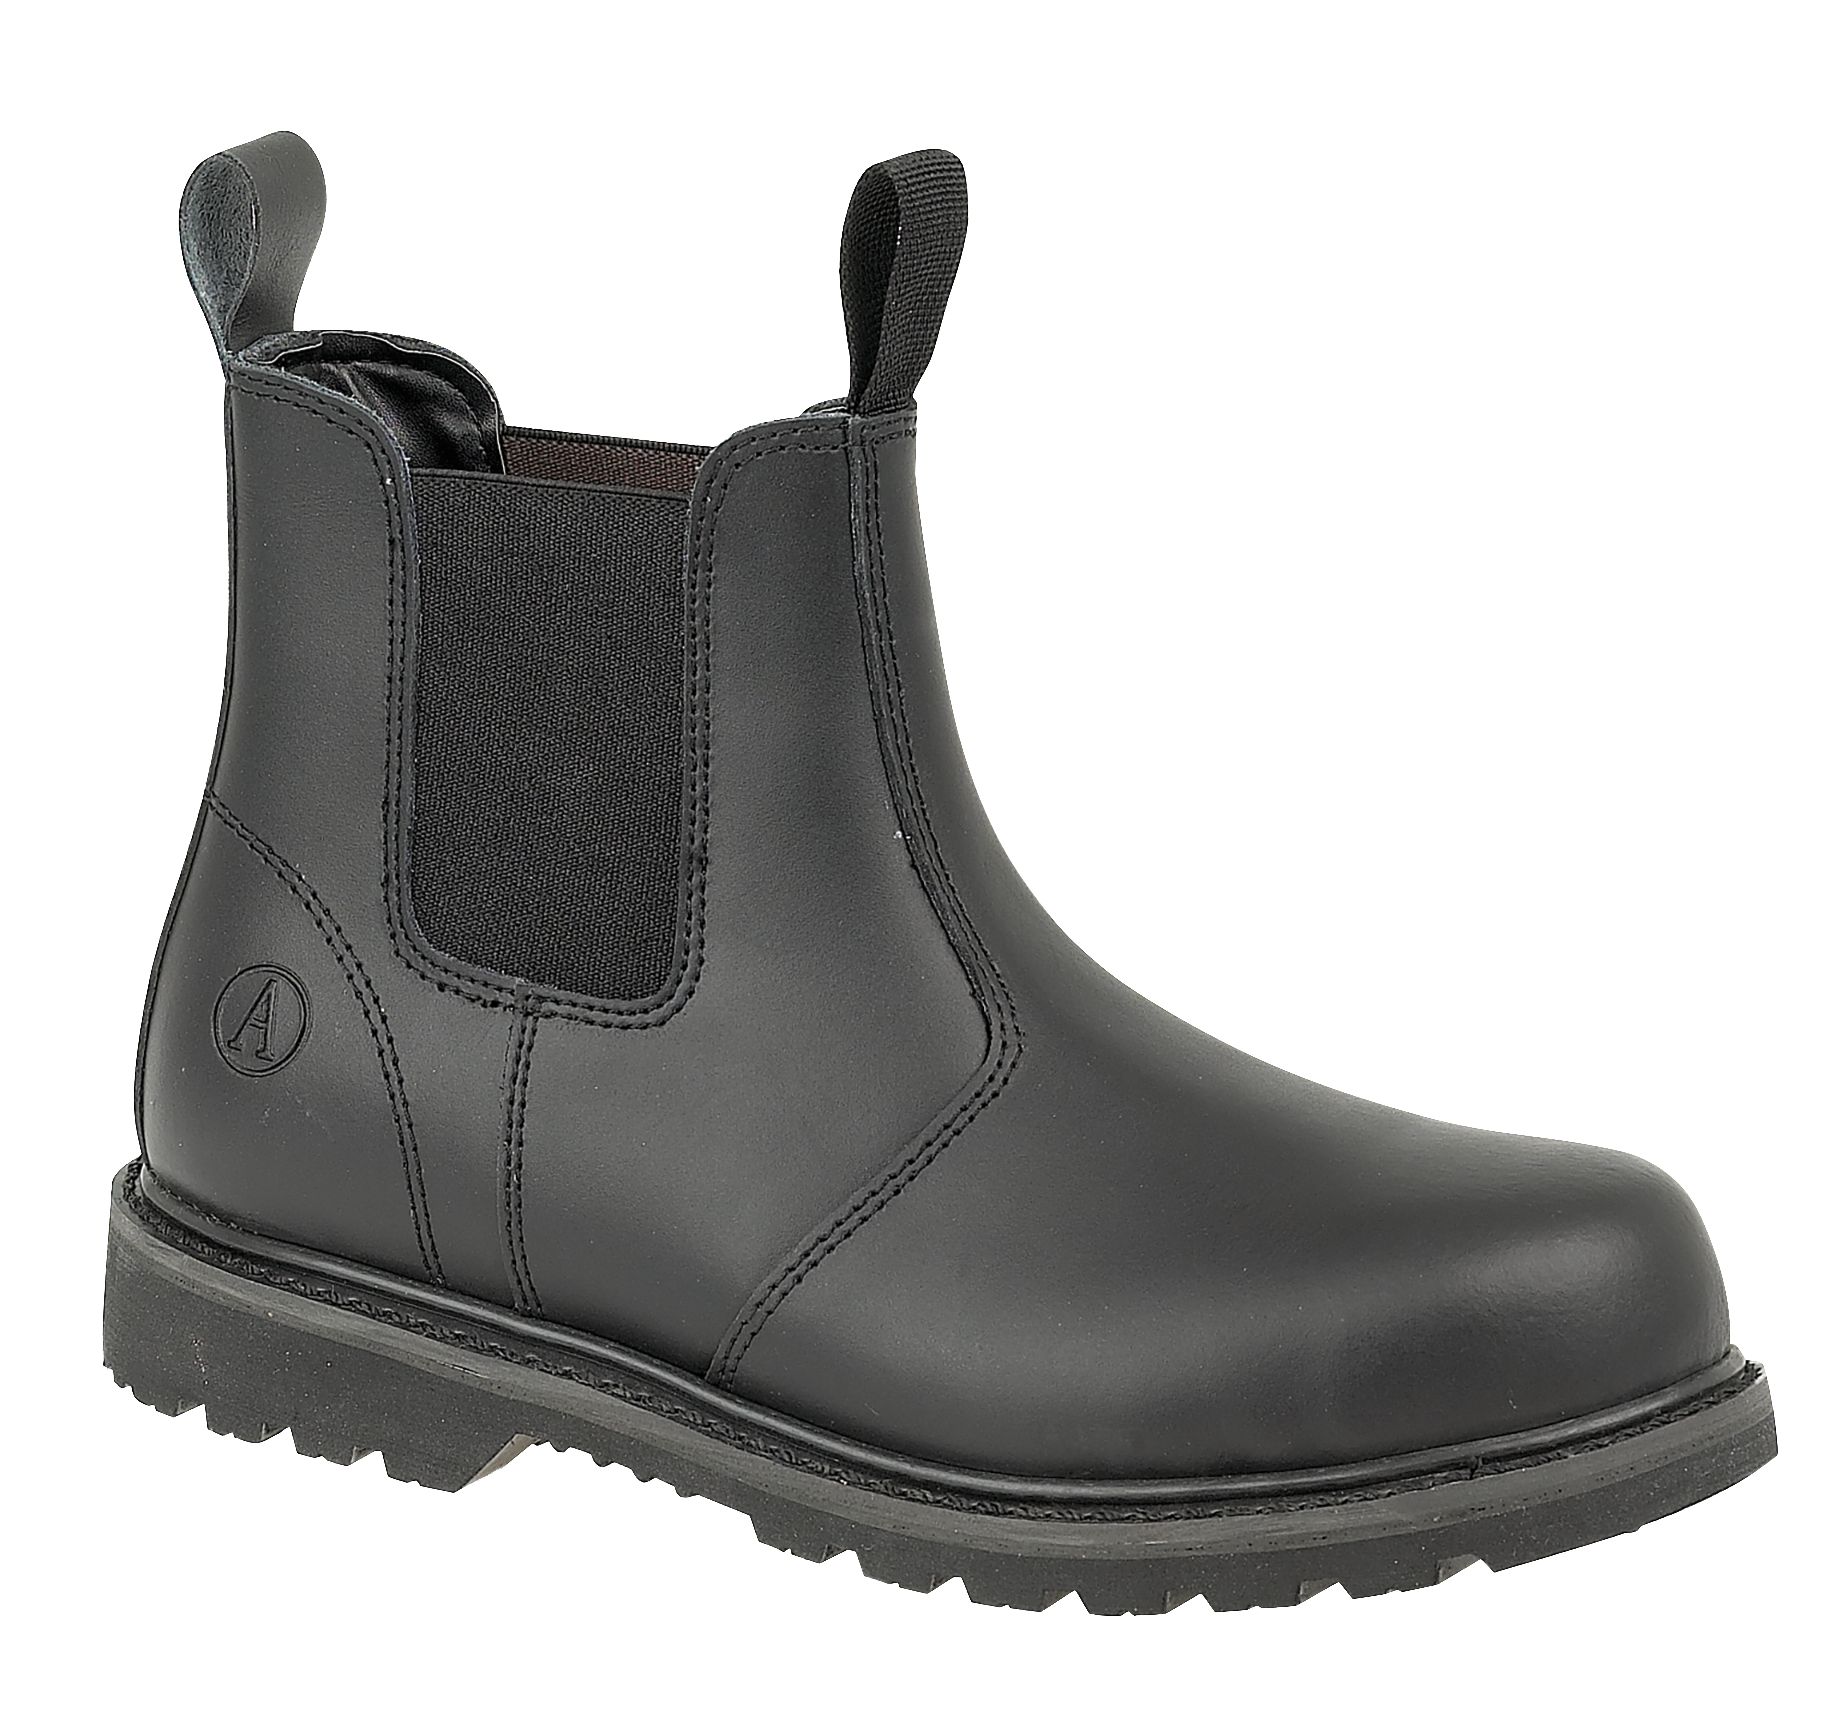 Image of Amblers Safety FS5 Dealer Safety Boot - Black Size 6